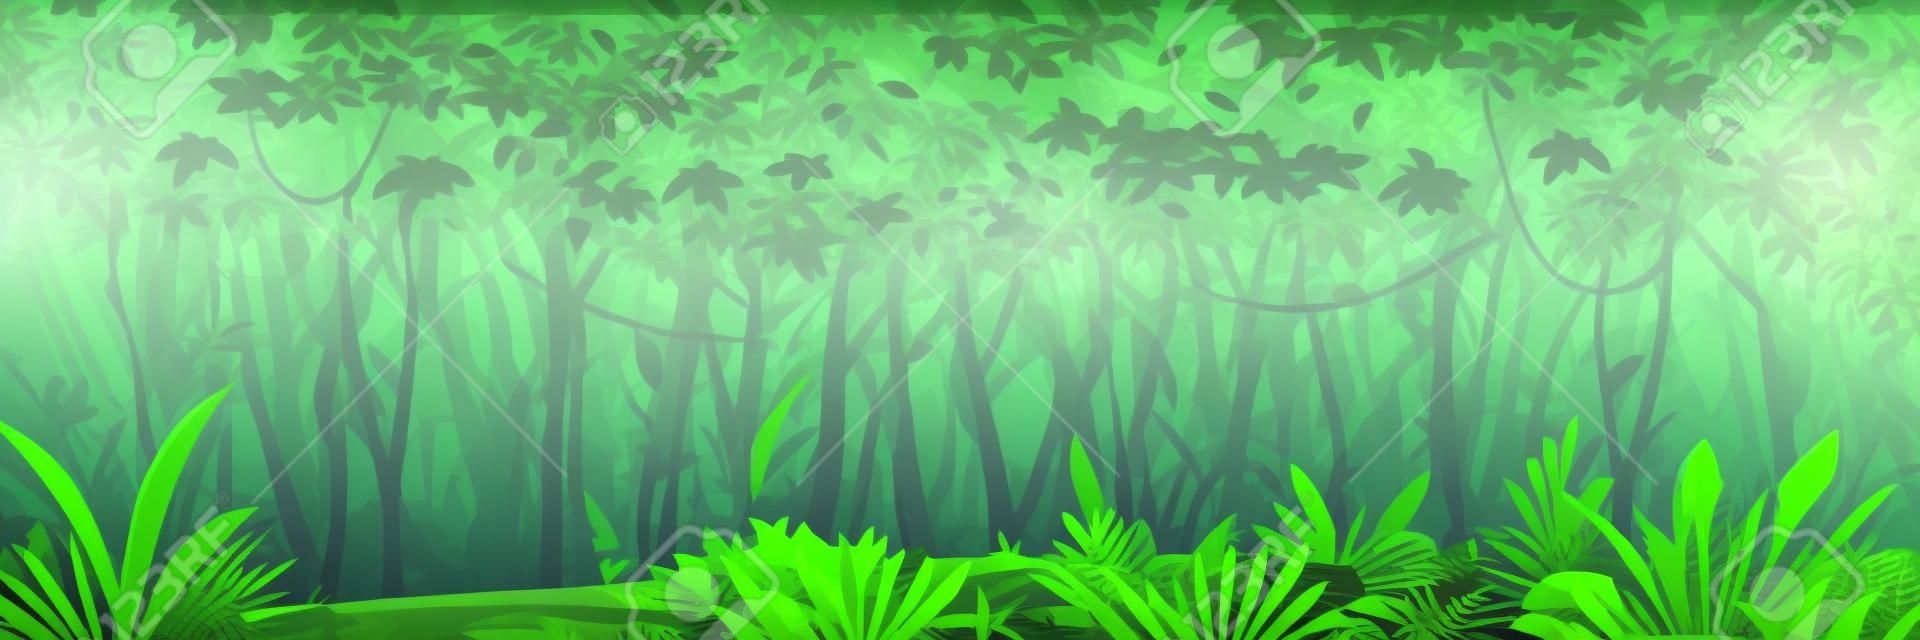 Foresta selvaggia della giungla scura umida con alberi, cespugli e liane, paesaggio naturale con fogliame verde della giungla e piante esotiche che crescono a terra, banner orizzontale con piante tropicali in giornata di sole